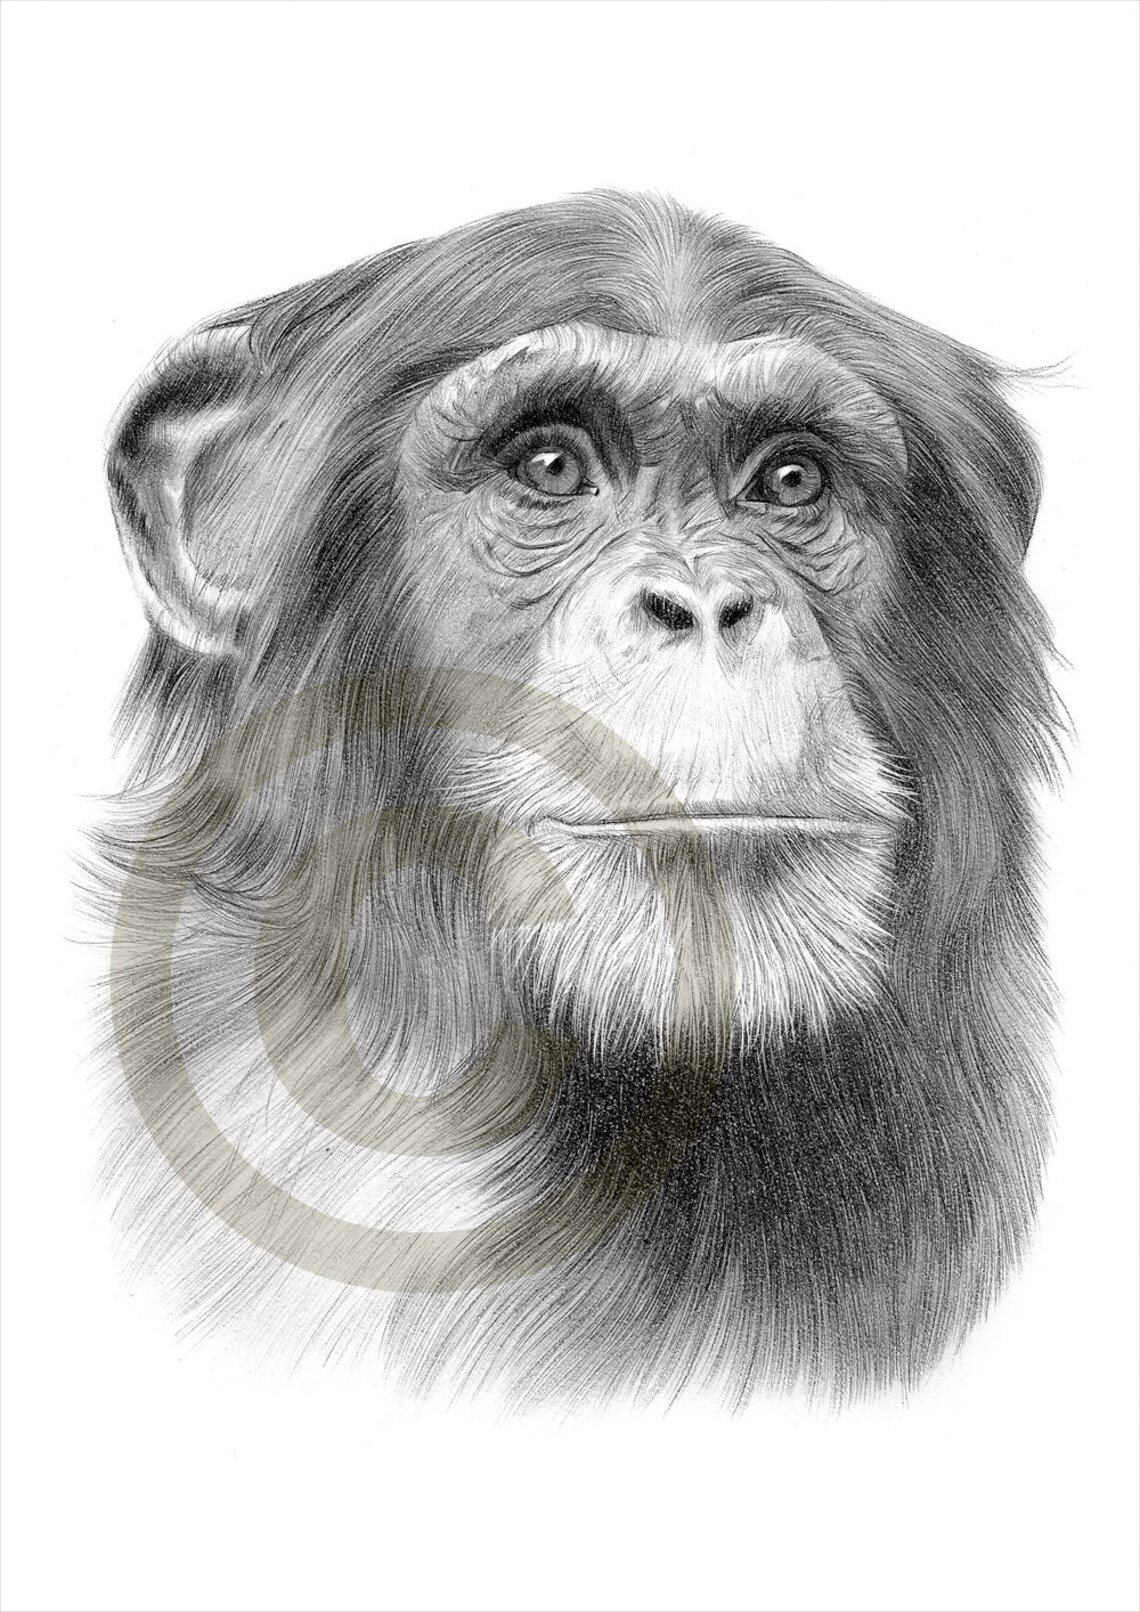 Oeuvre Dart Reproduction De Dessin Au Crayon Sur Chimpanzé  Etsy serapportantà Dessin De Chimpanzé